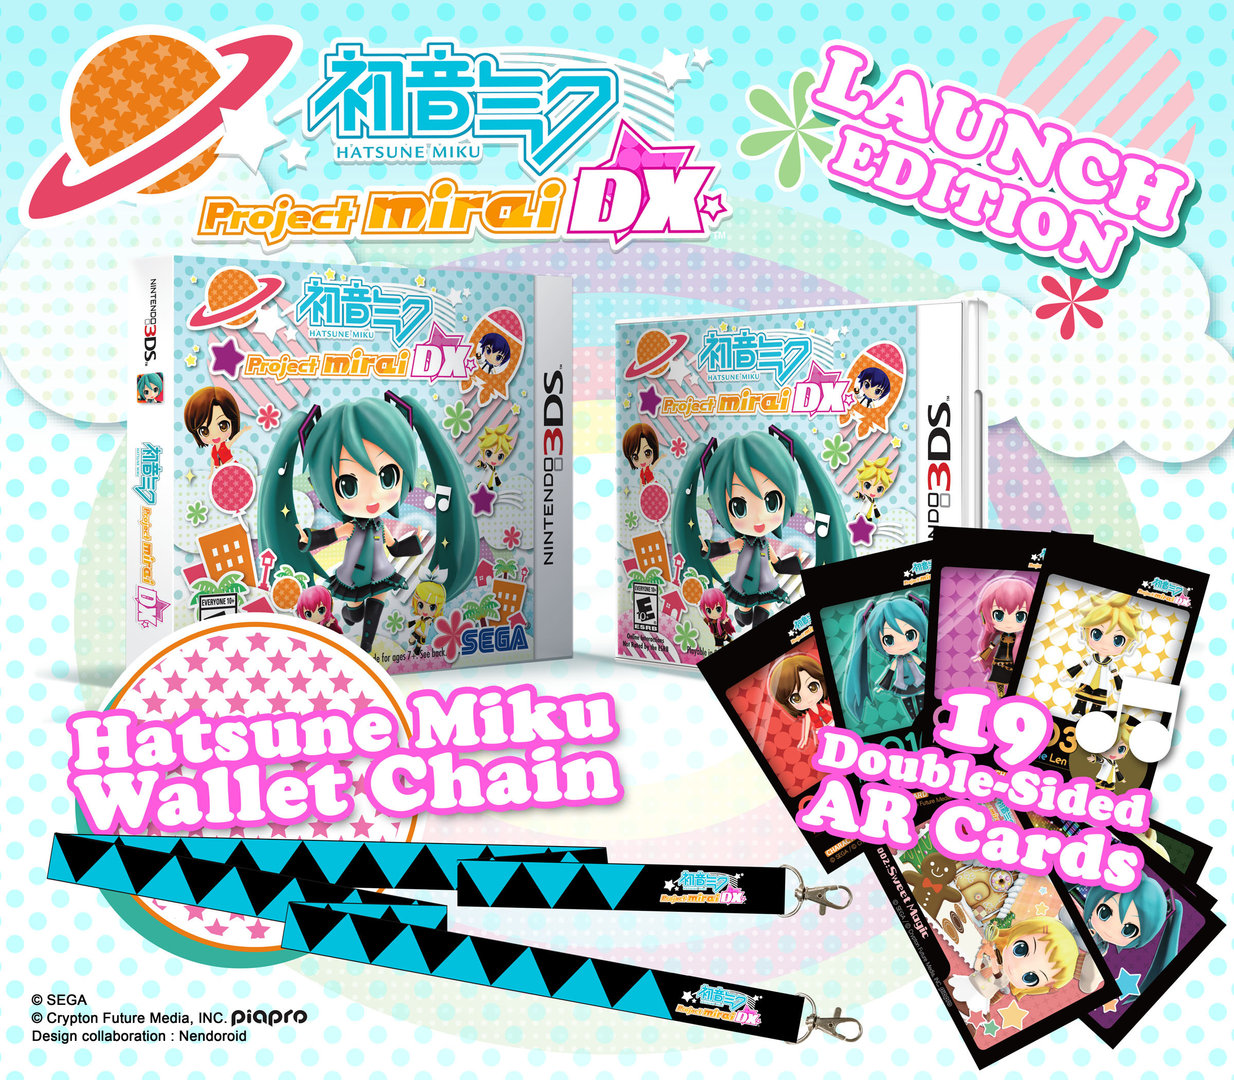 Hatsune Miku: Project Mirai DX - Day One Edition